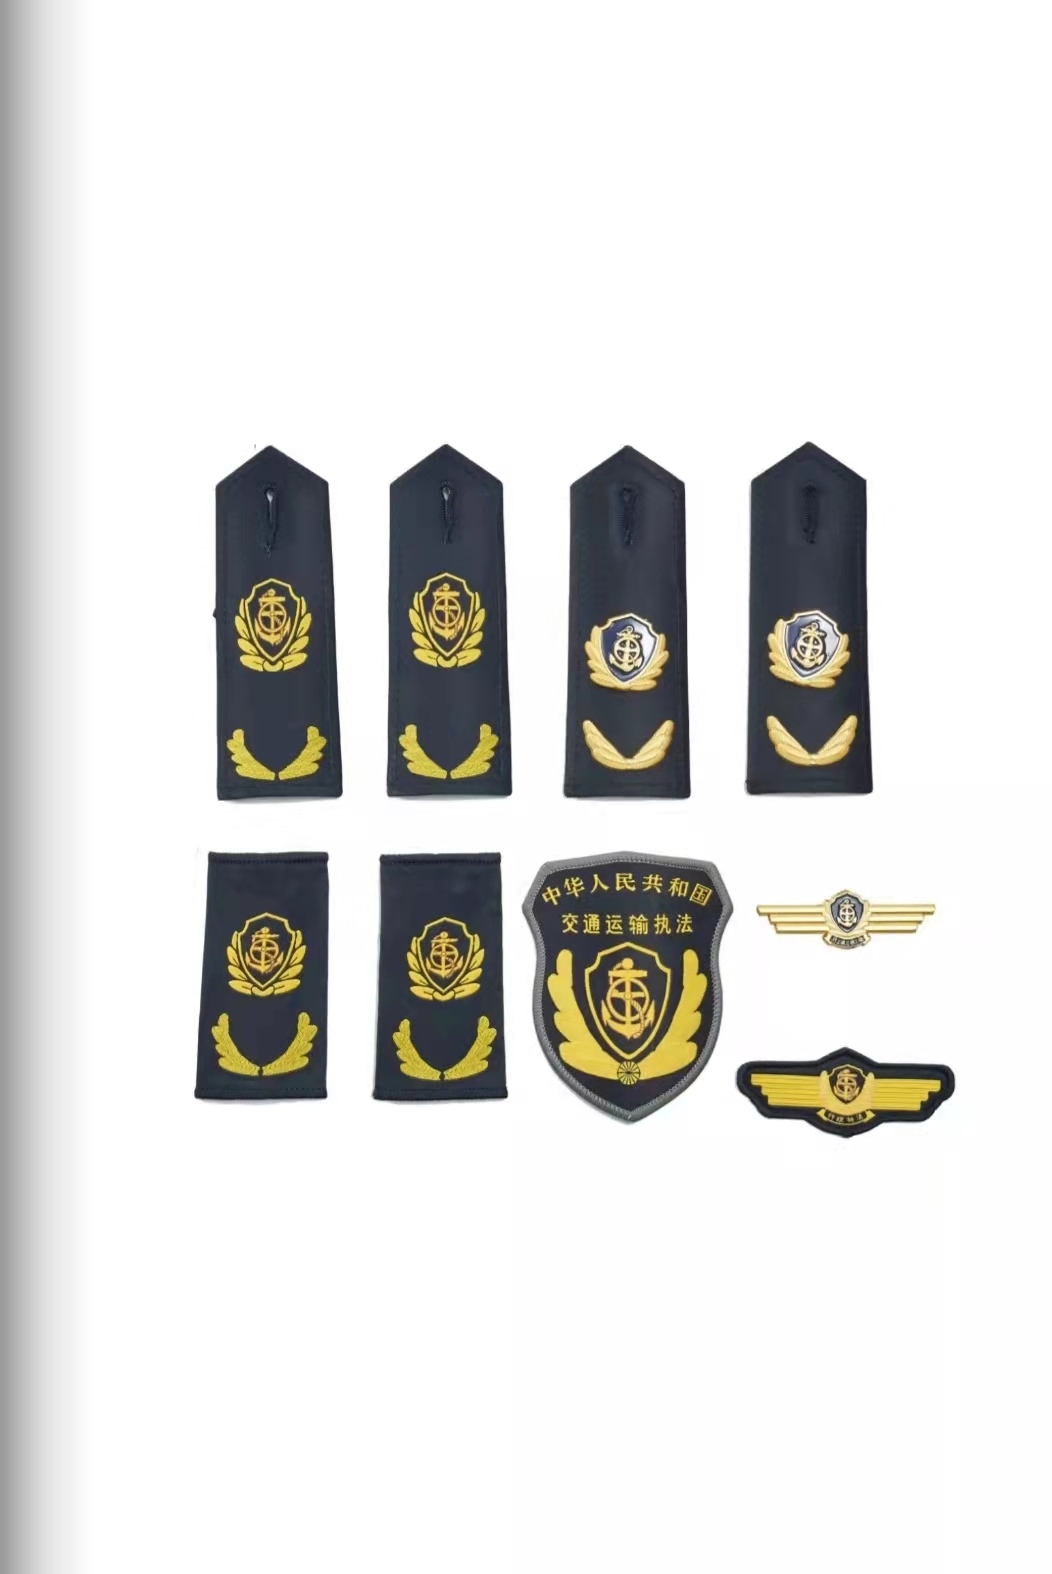 通化六部门统一交通运输执法服装标志